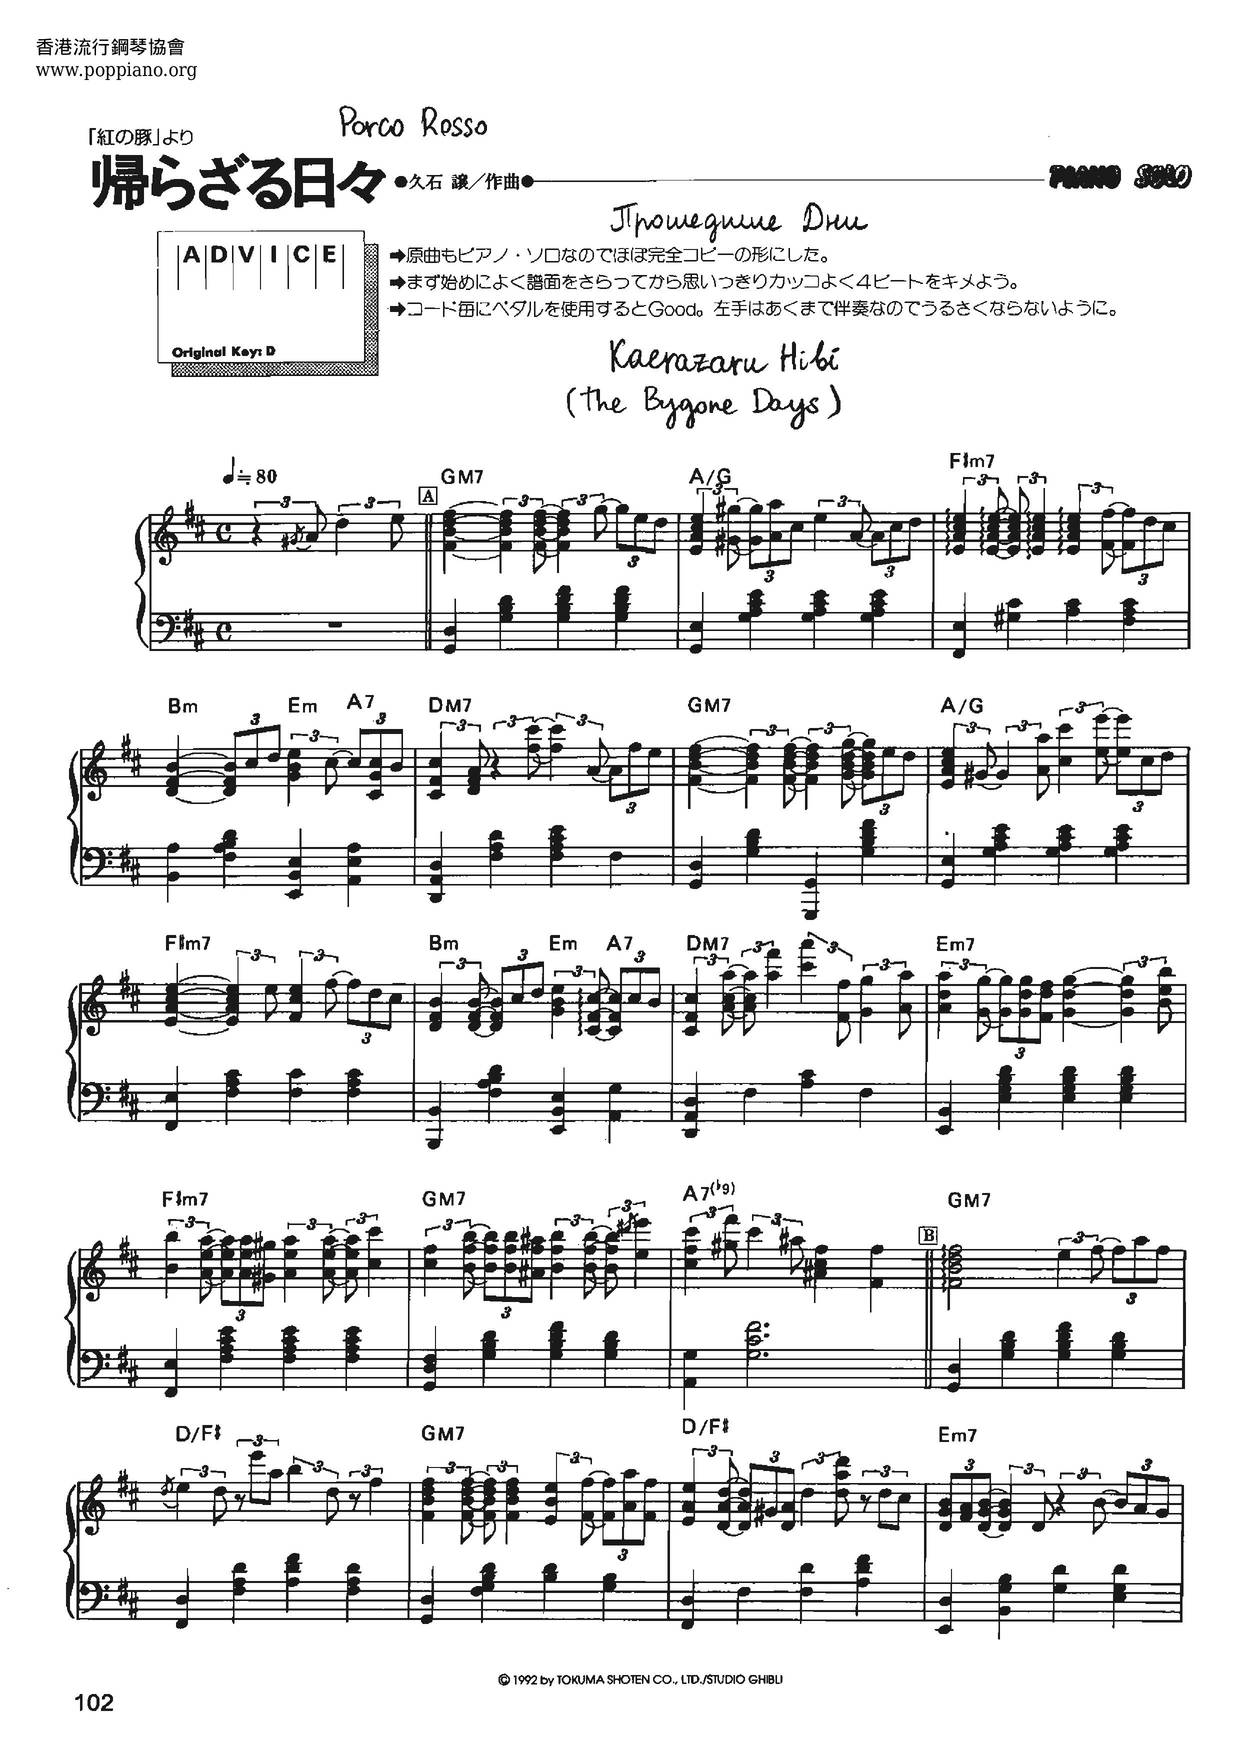 Kaerazaru Hibi - The Bygone Days Score